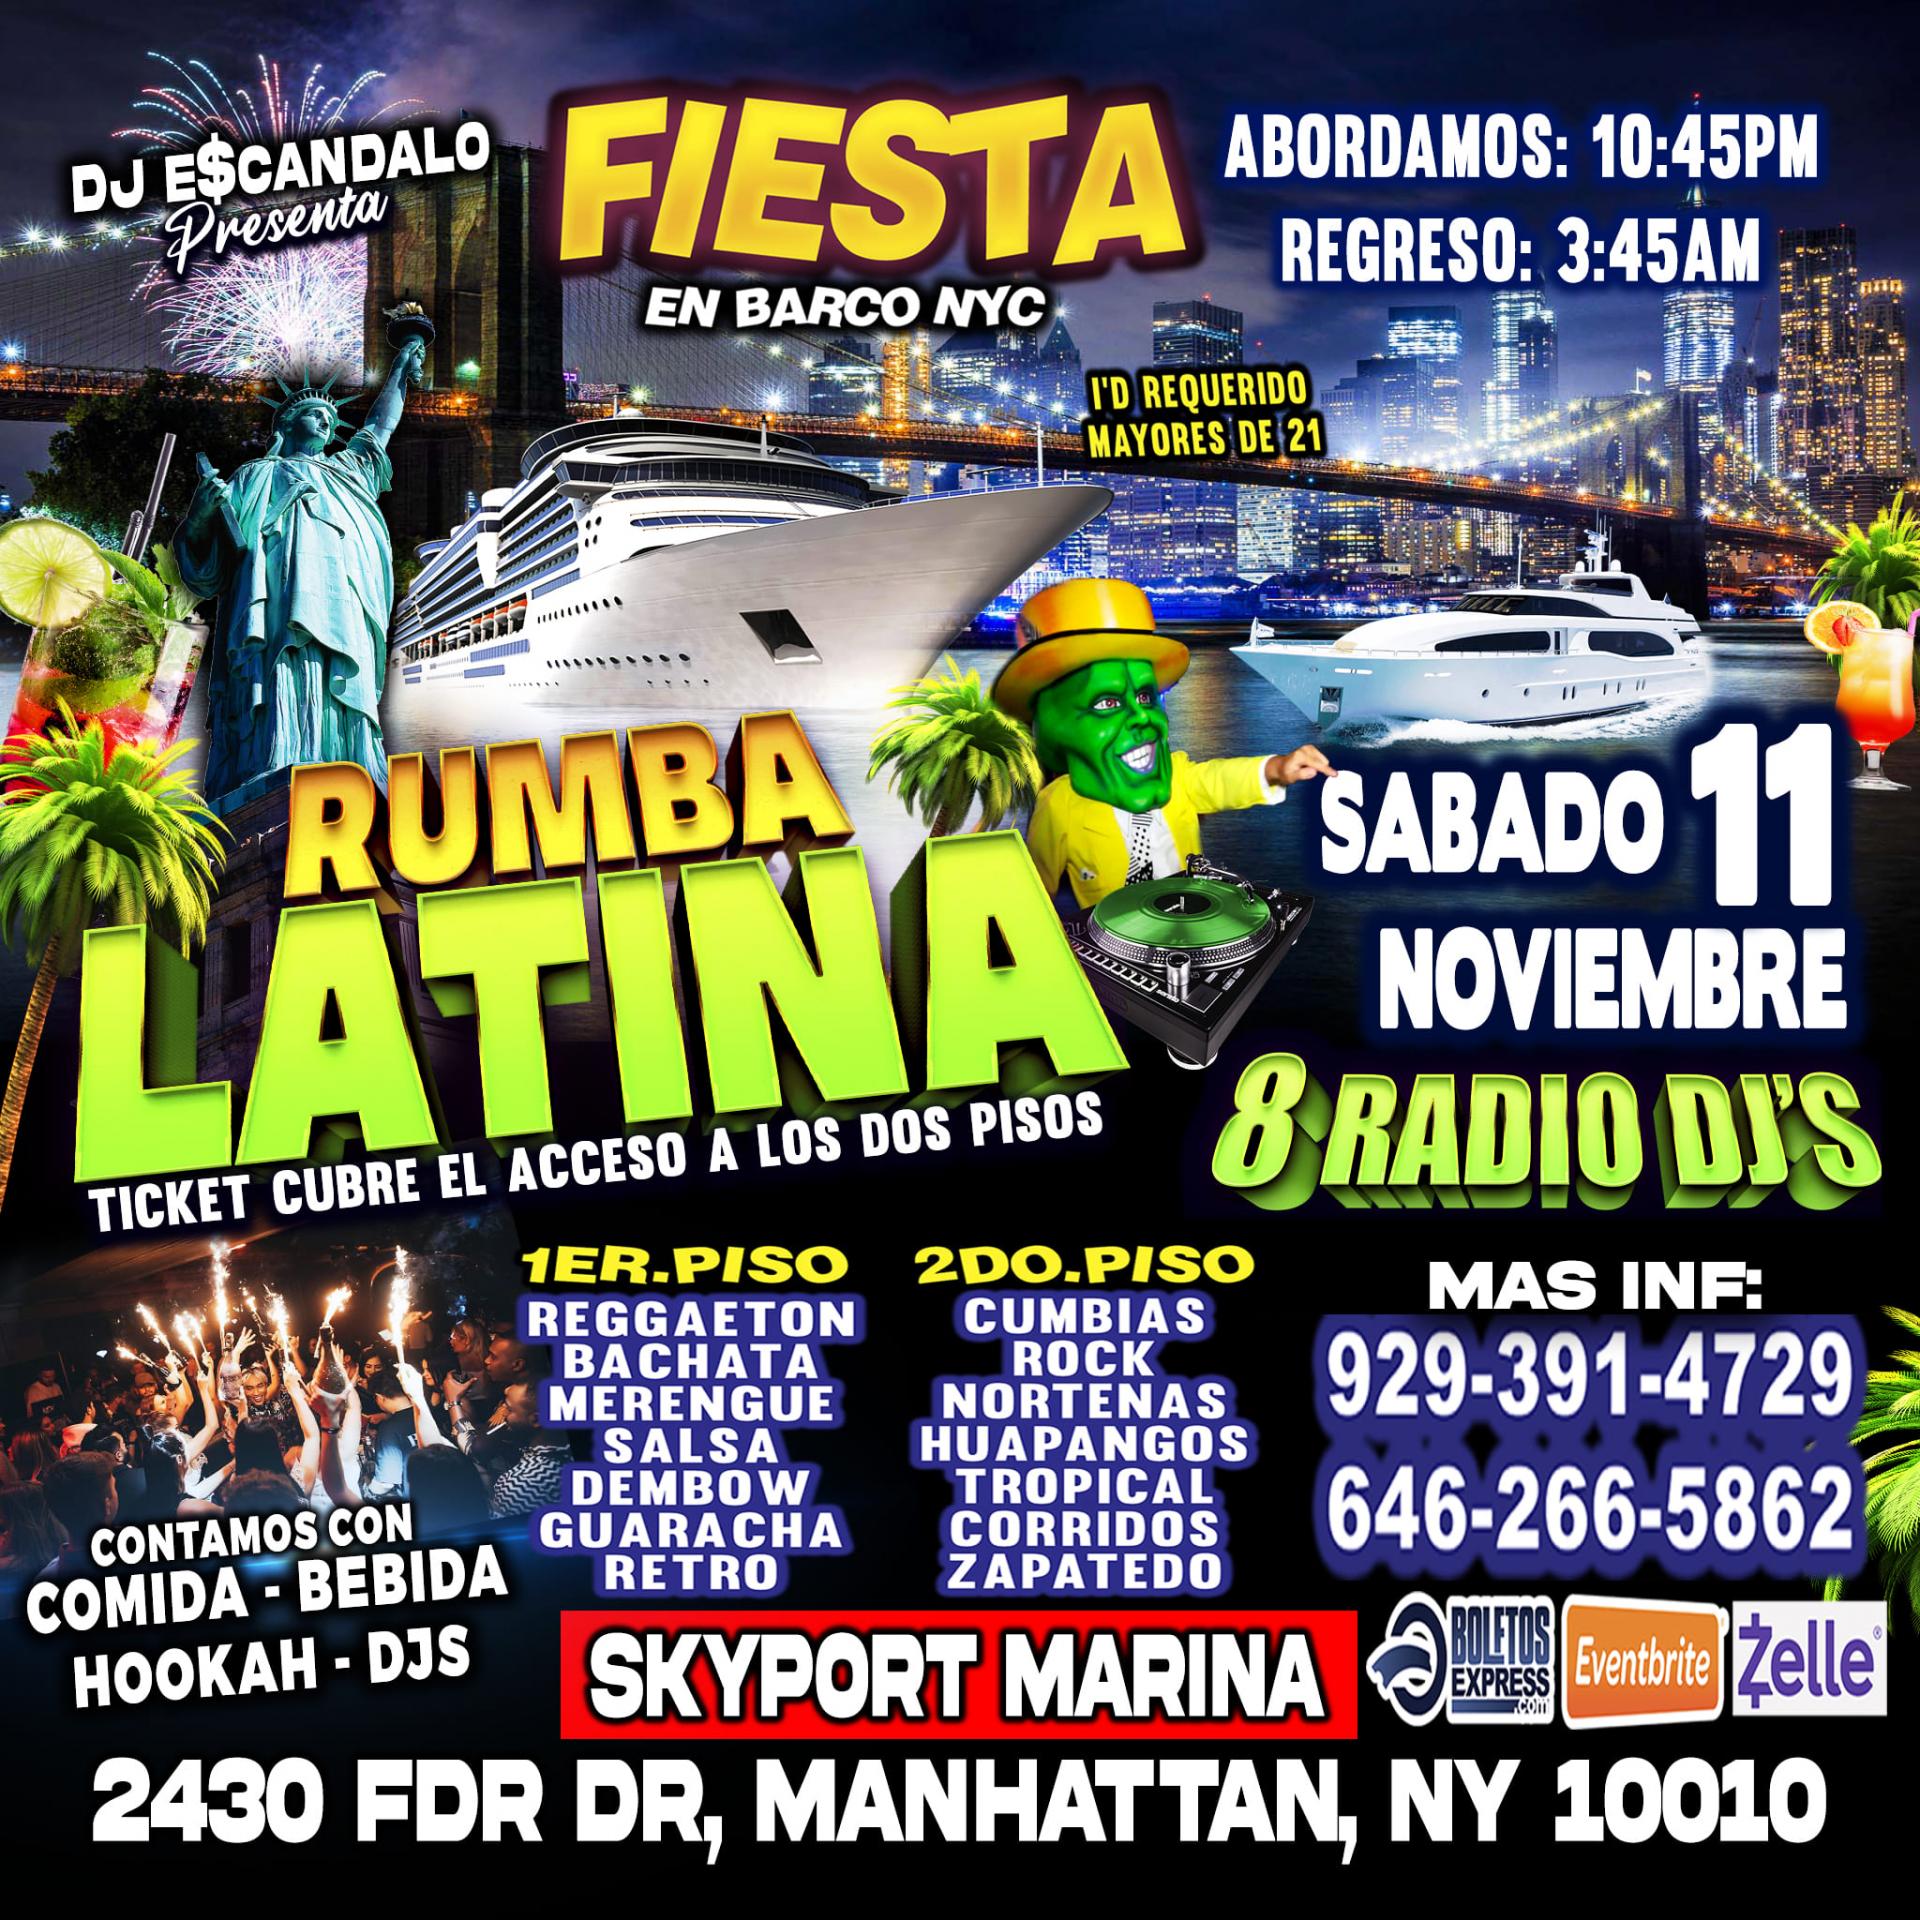 Sabado 11 De Noviembre + Rumba Latina En Barco + Manhattan Ny